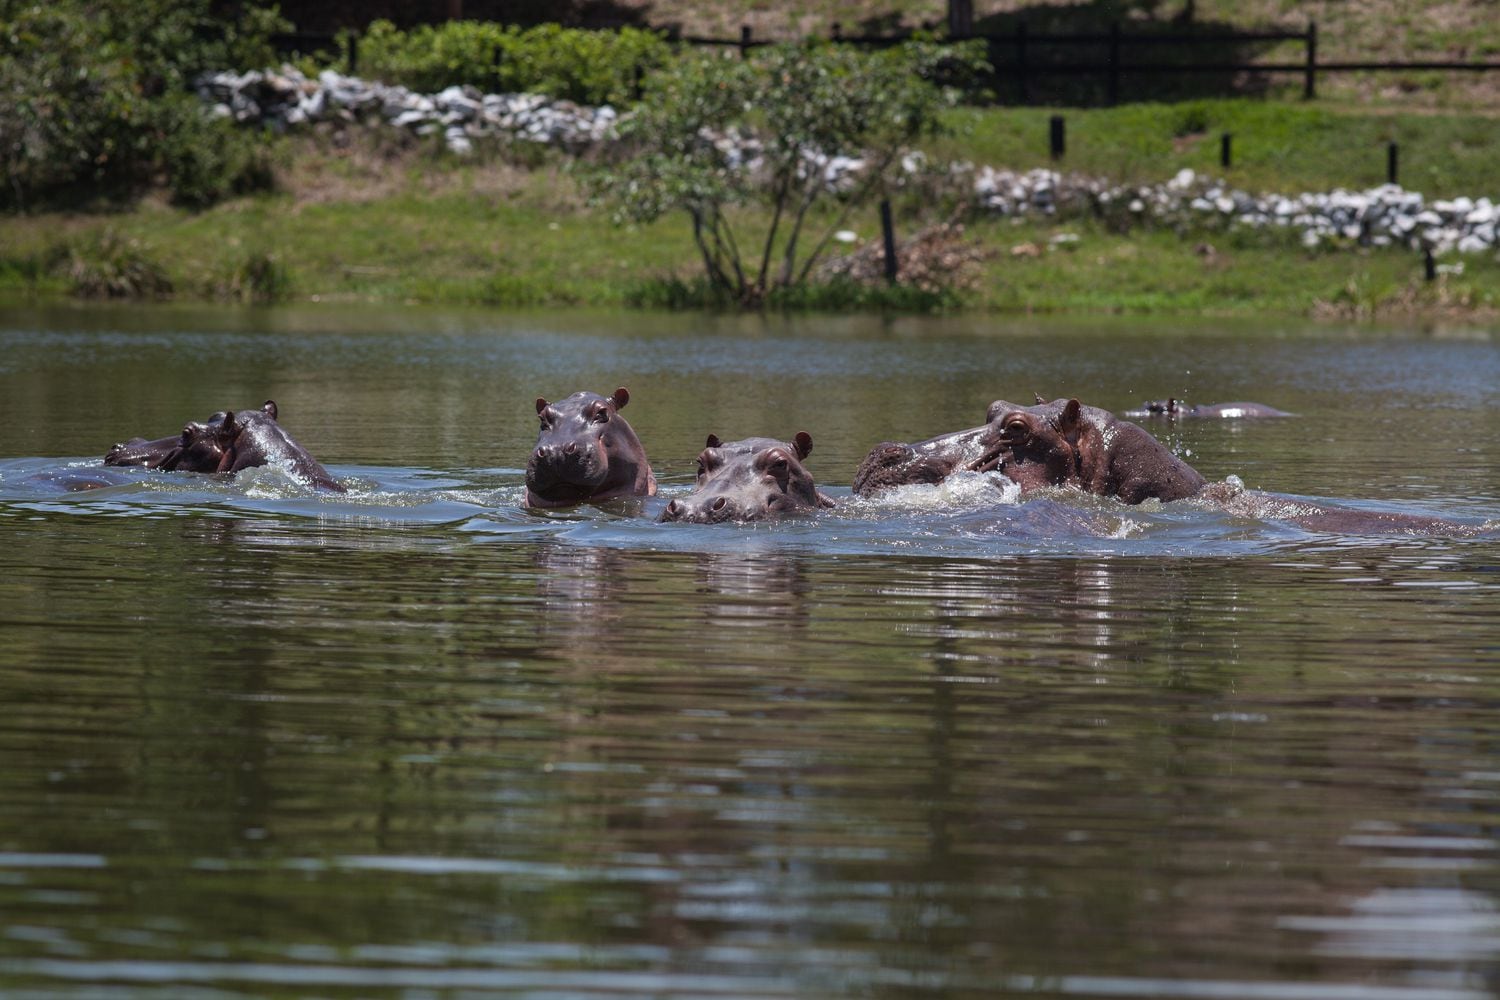 De los cuatro hipopótamos que tenía Pablo Escobar se ha pasado a unos 80. De seguir a este ritmo, serán unos 800 dentro de 20 años y alrededor de 7.000 en 2060.